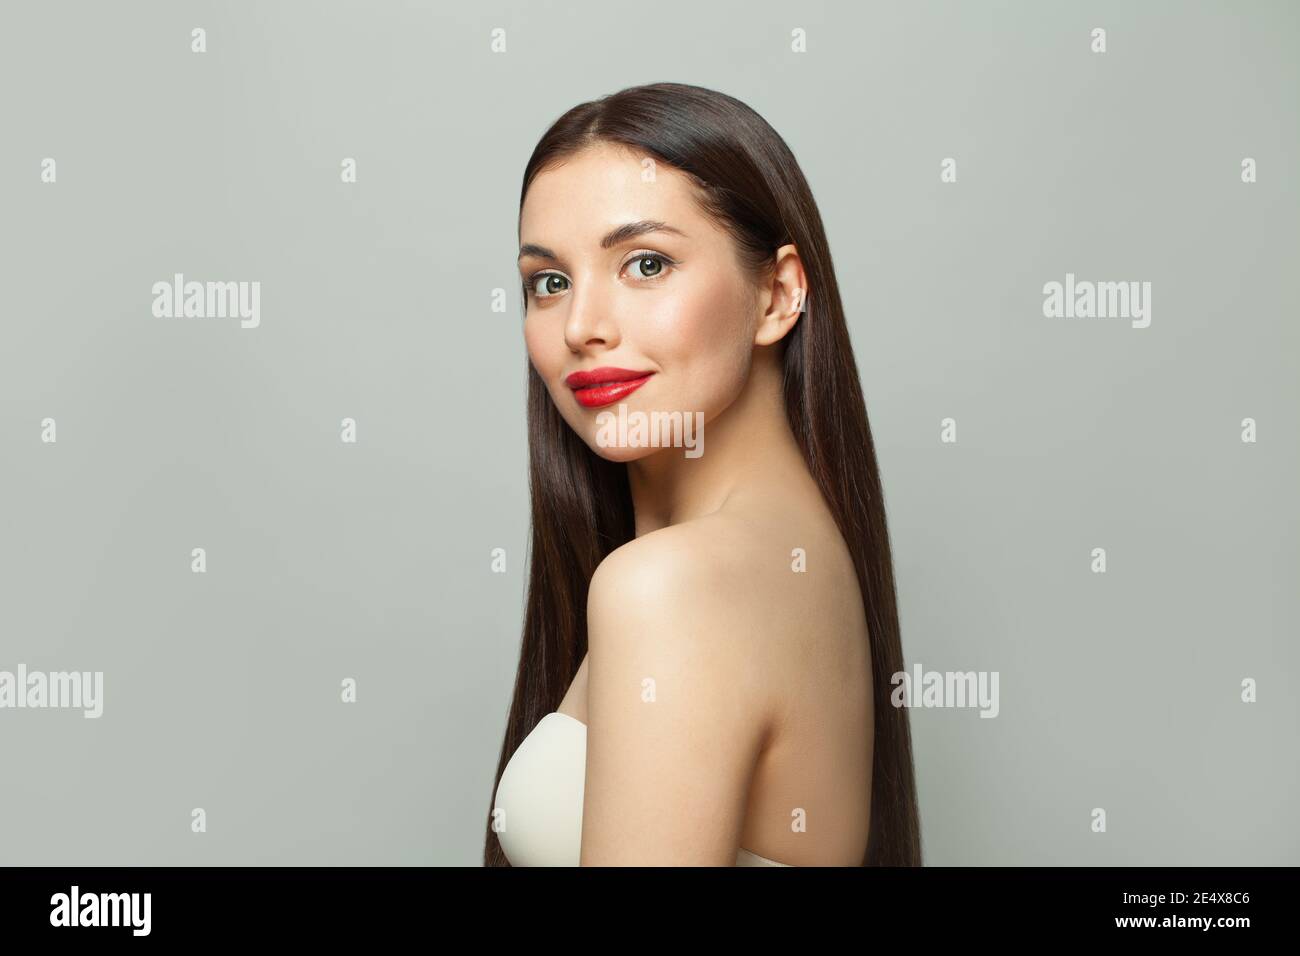 Ritratto di bellezza di attraente modello sano donna con pelle chiara e lunghi capelli lisci e luminosi su sfondo bianco Foto Stock